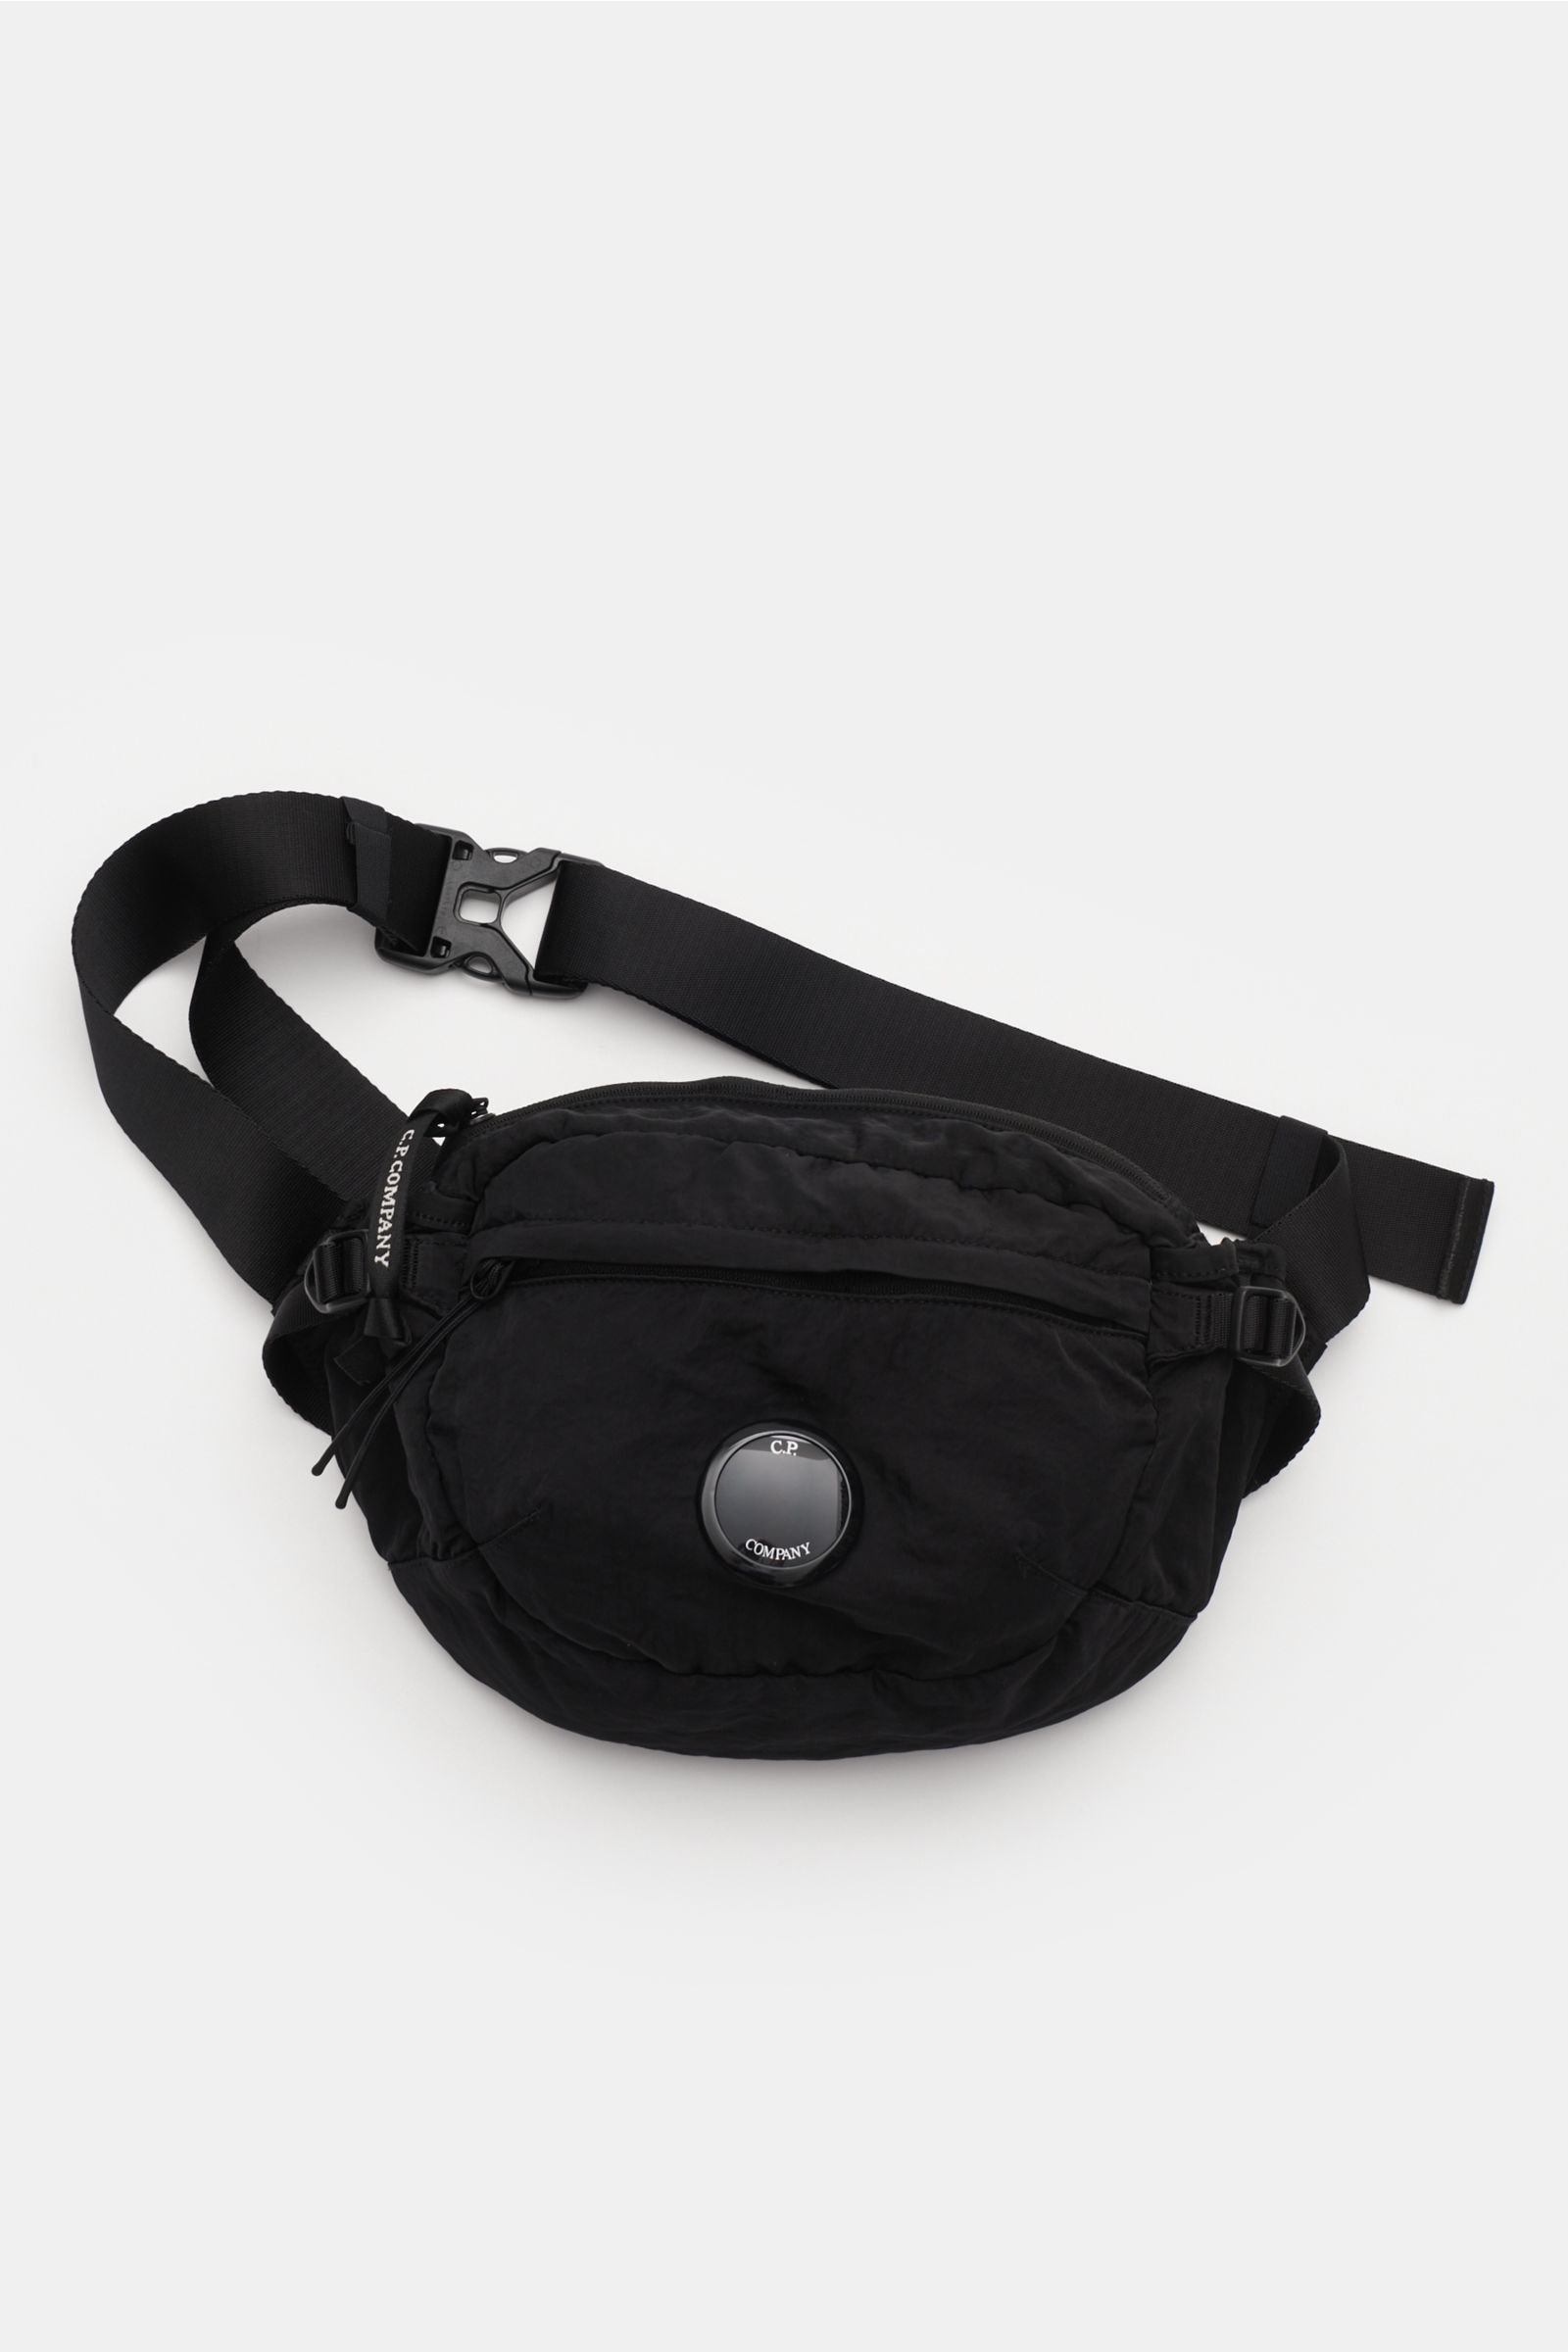 Belt bag black